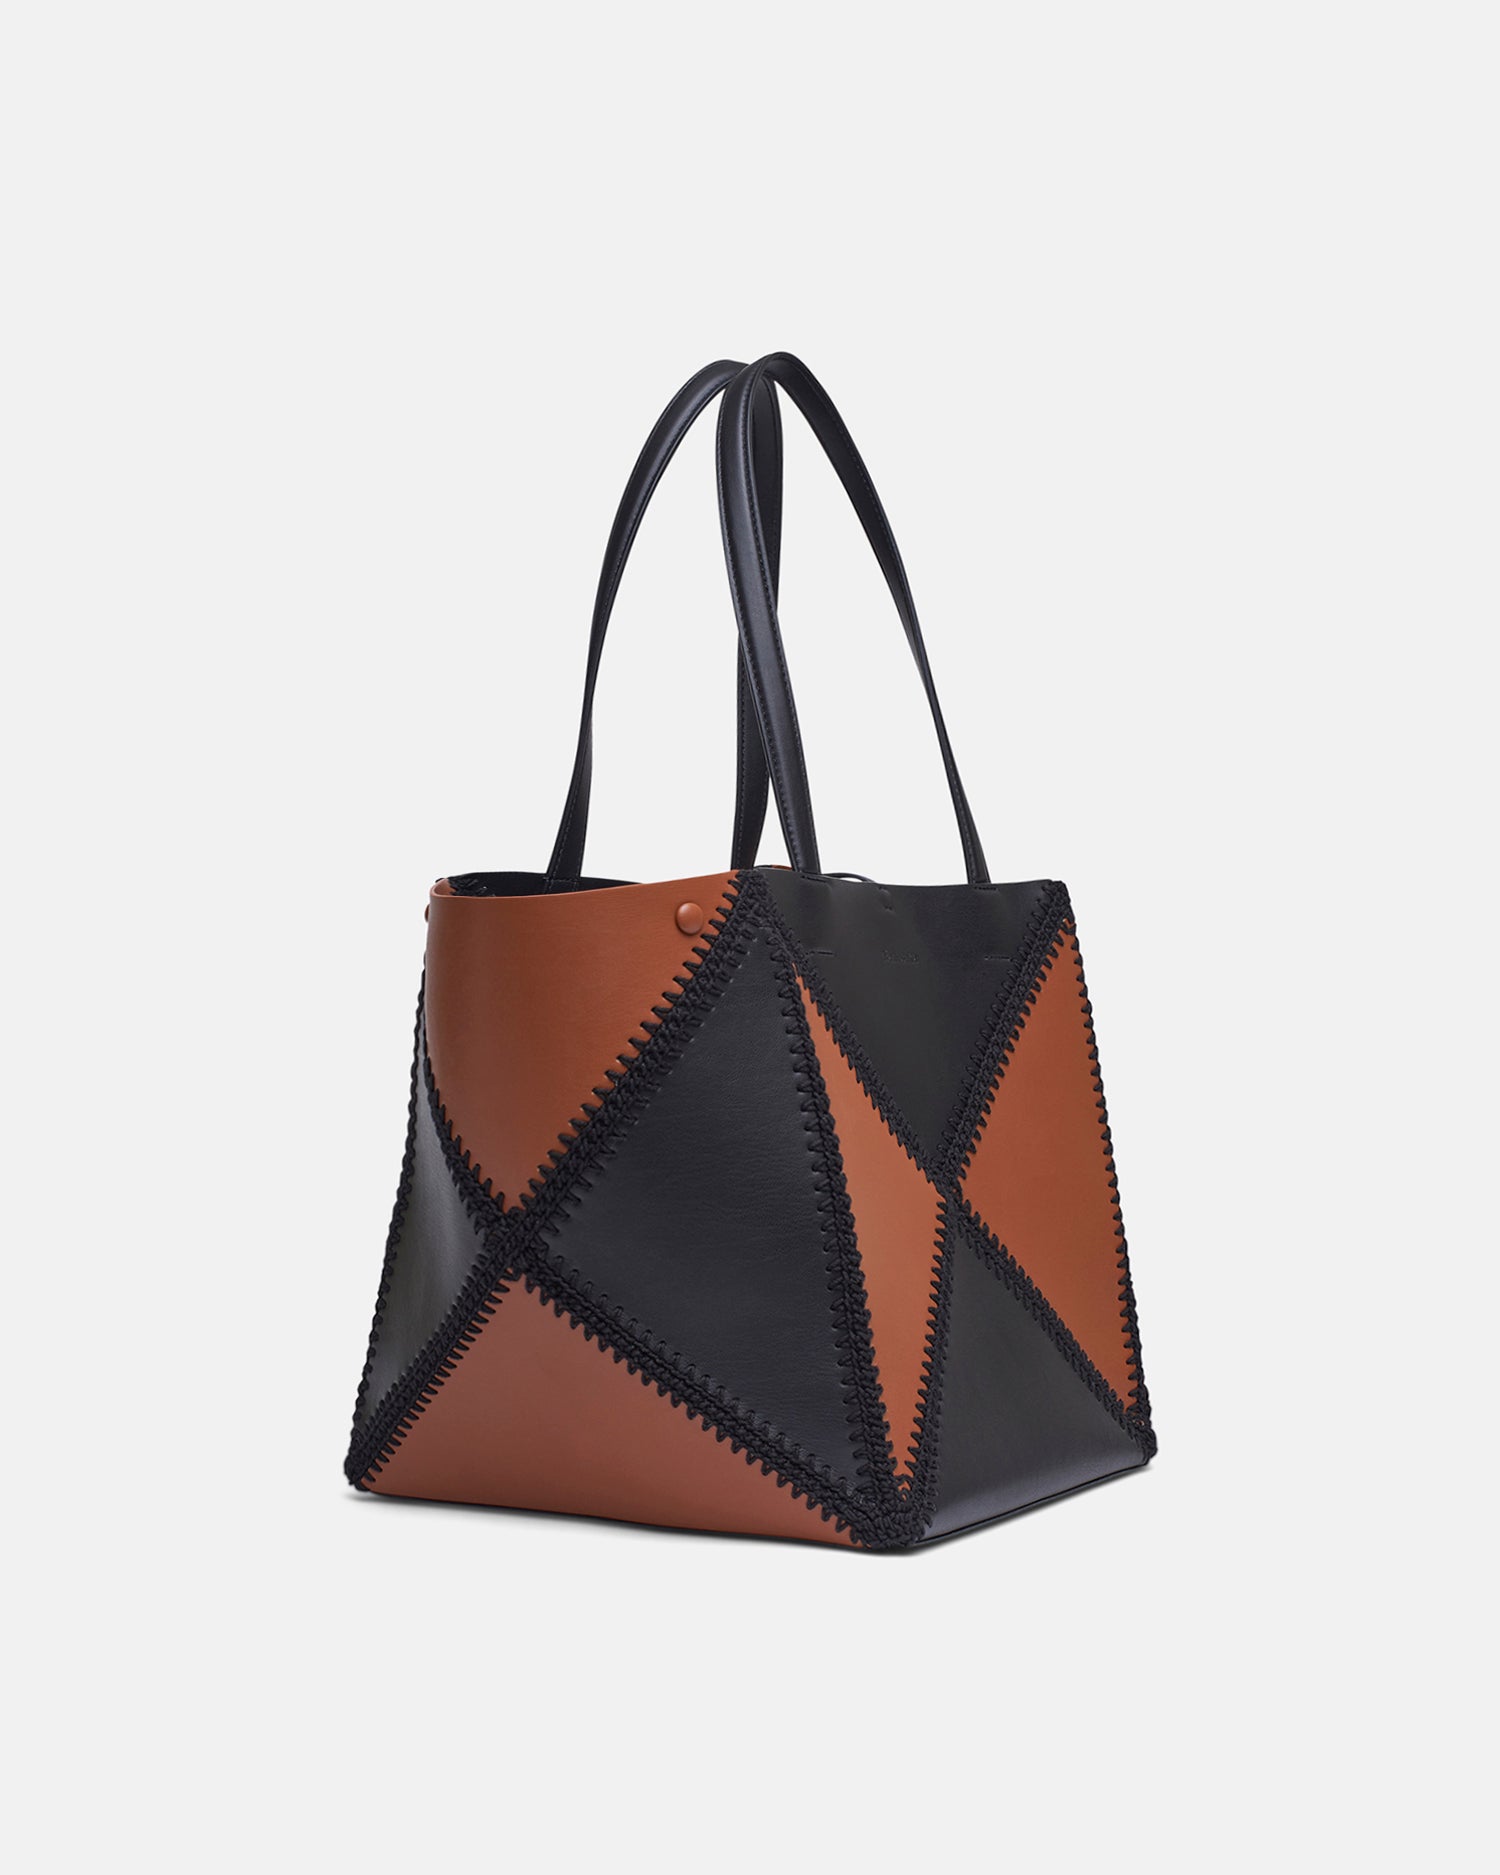 Fendi Introduces New “Origami” Bag - V Magazine